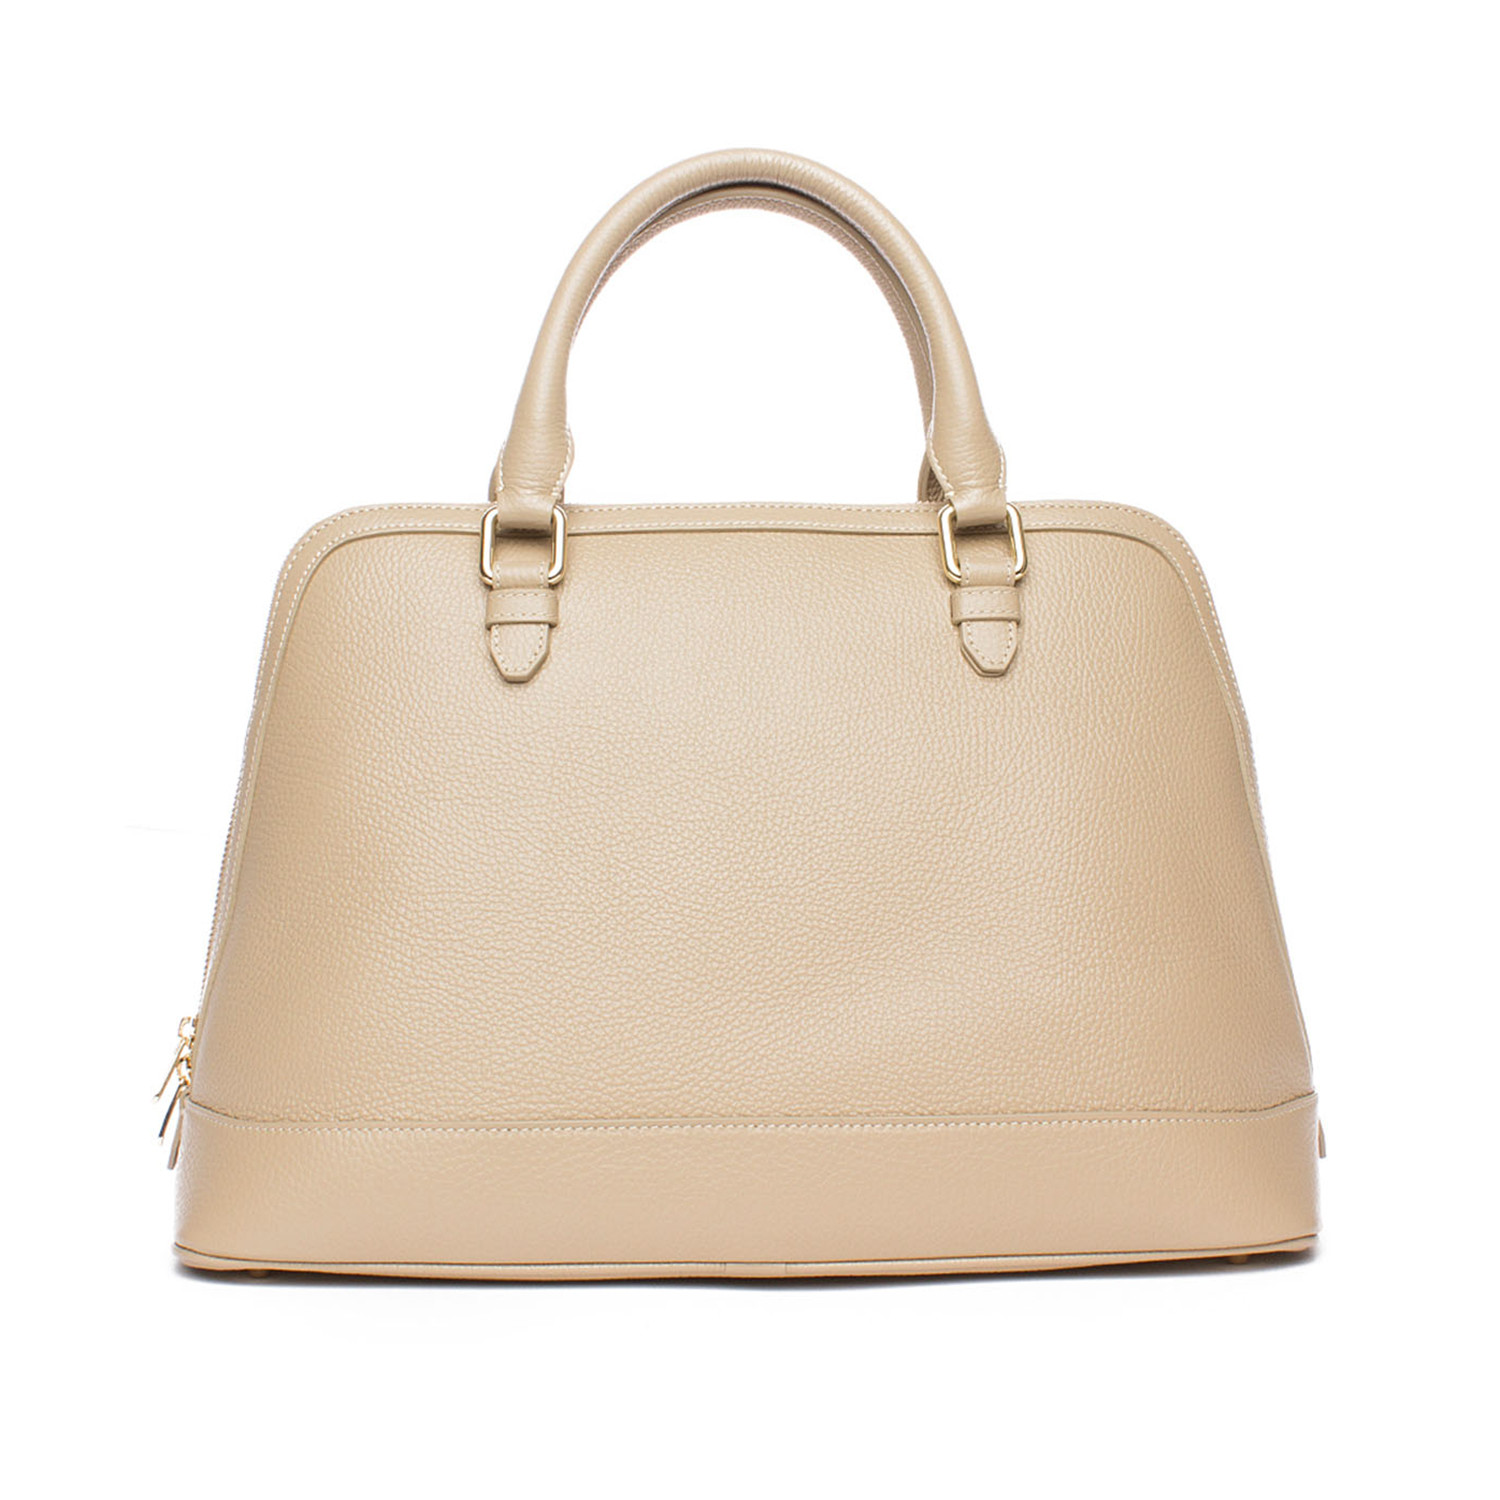 Top Handle Satchel Handbag // Beige - Versace Collection - Touch of Modern